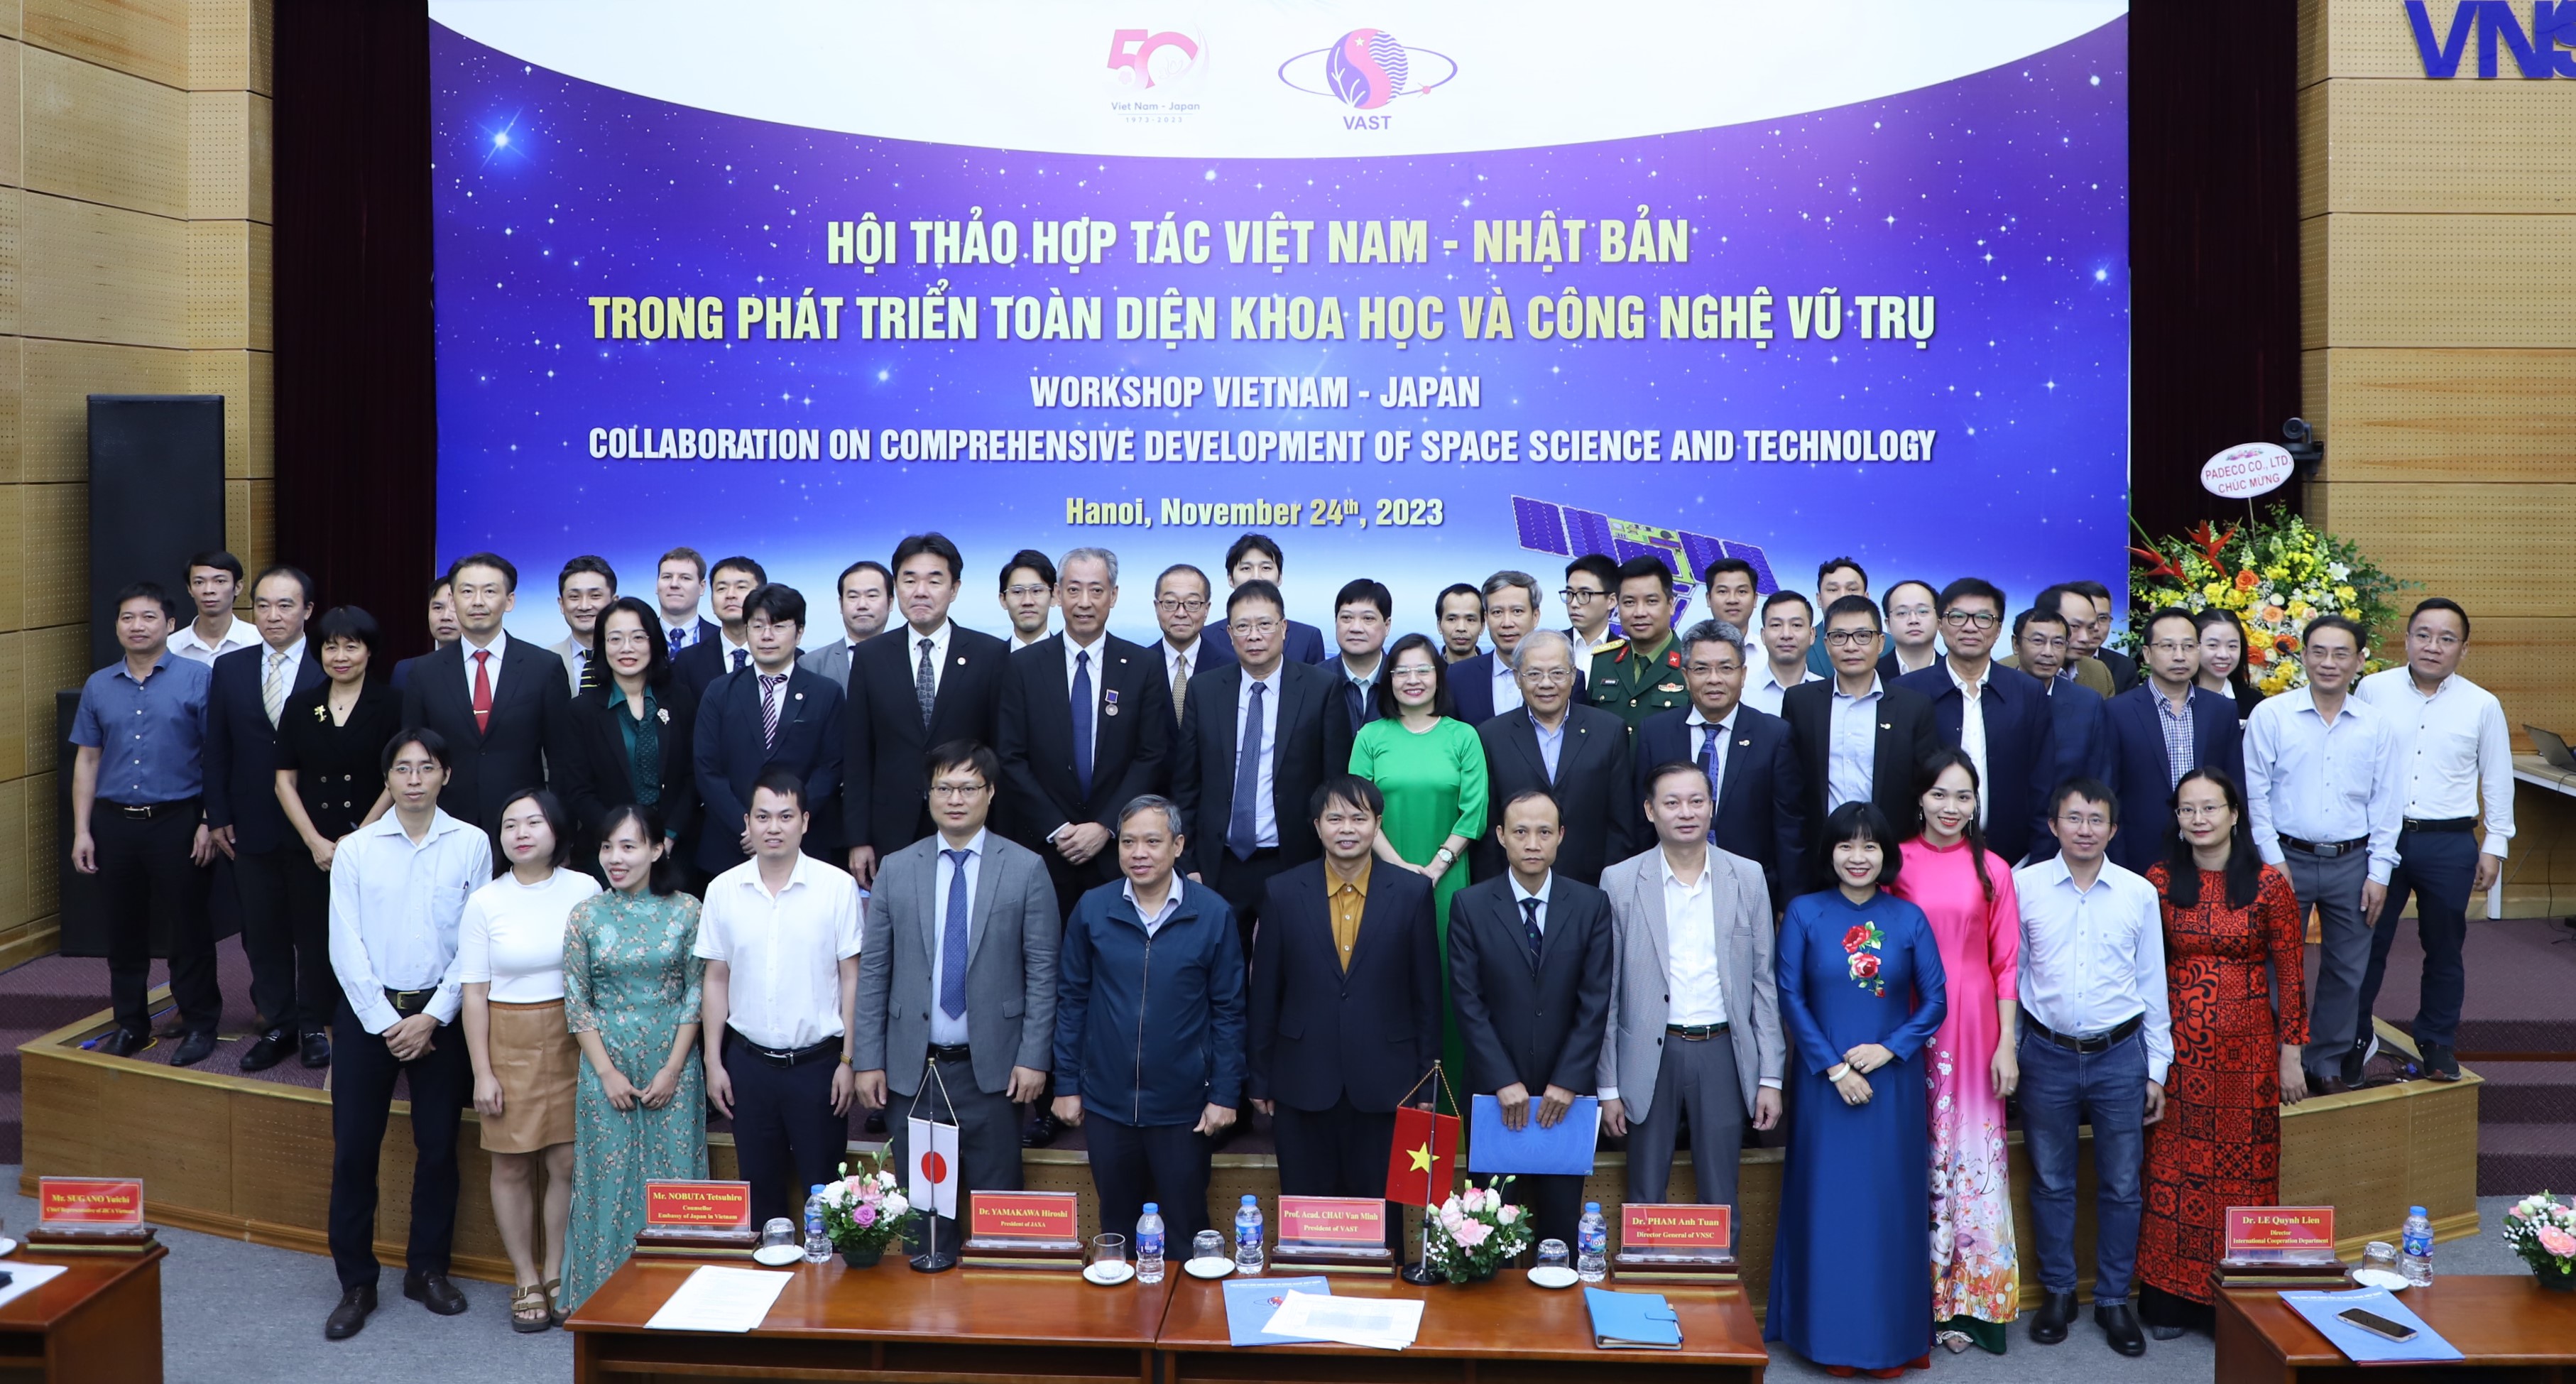 Hội thảo Hợp tác Việt Nam – Nhật Bản trong phát triển toàn diện Khoa học và Công nghệ Vũ trụ